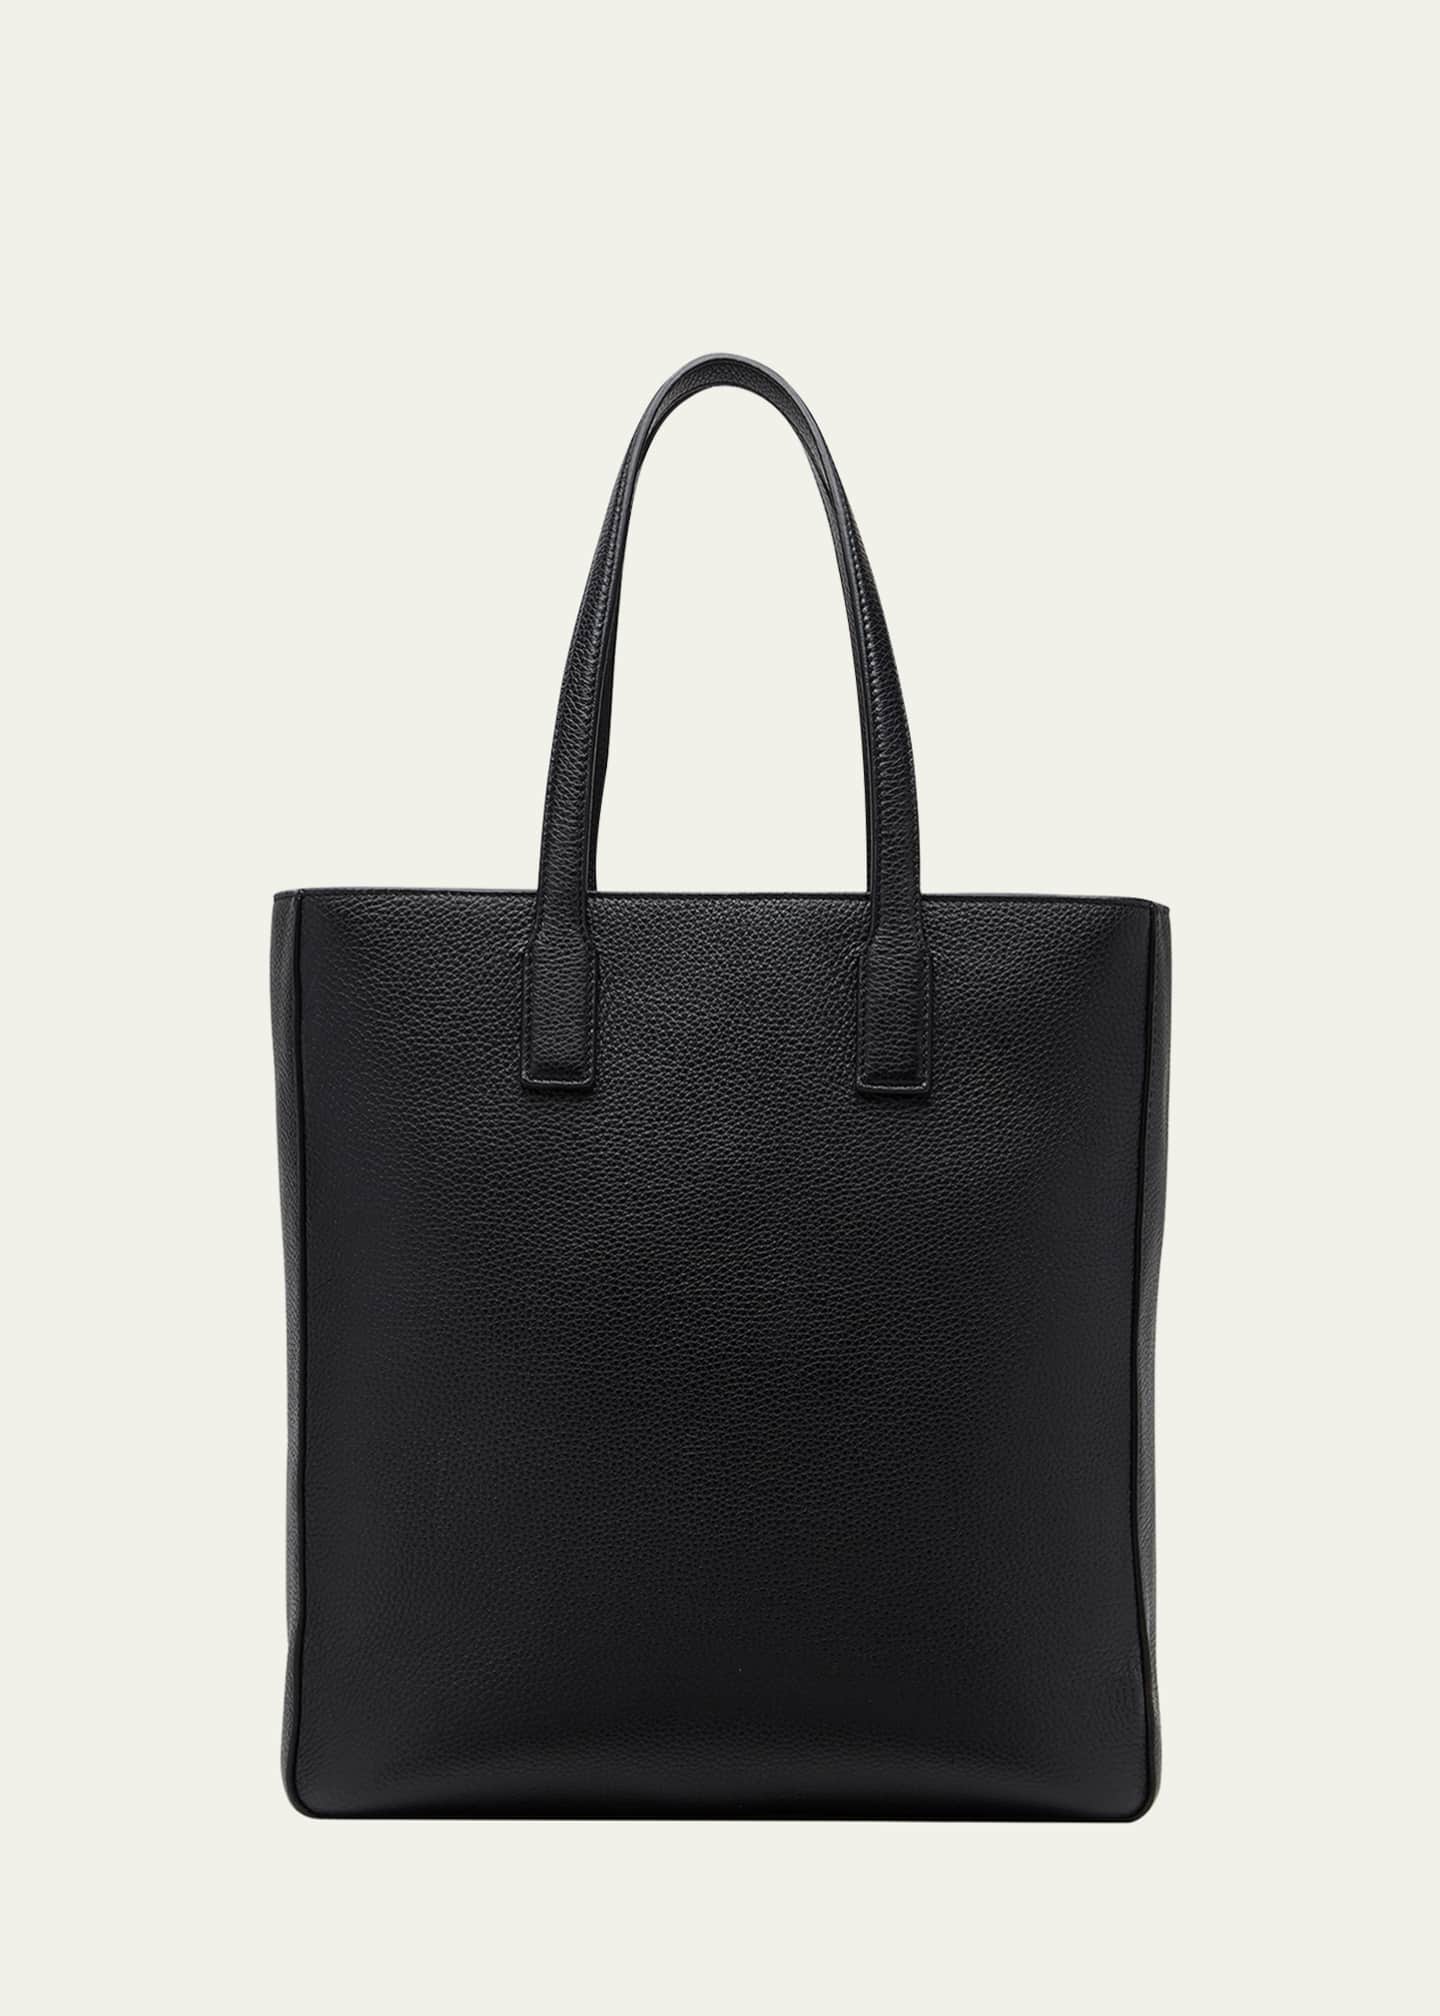 Ferragamo Men's Firenze Leather Tote Bag - Bergdorf Goodman